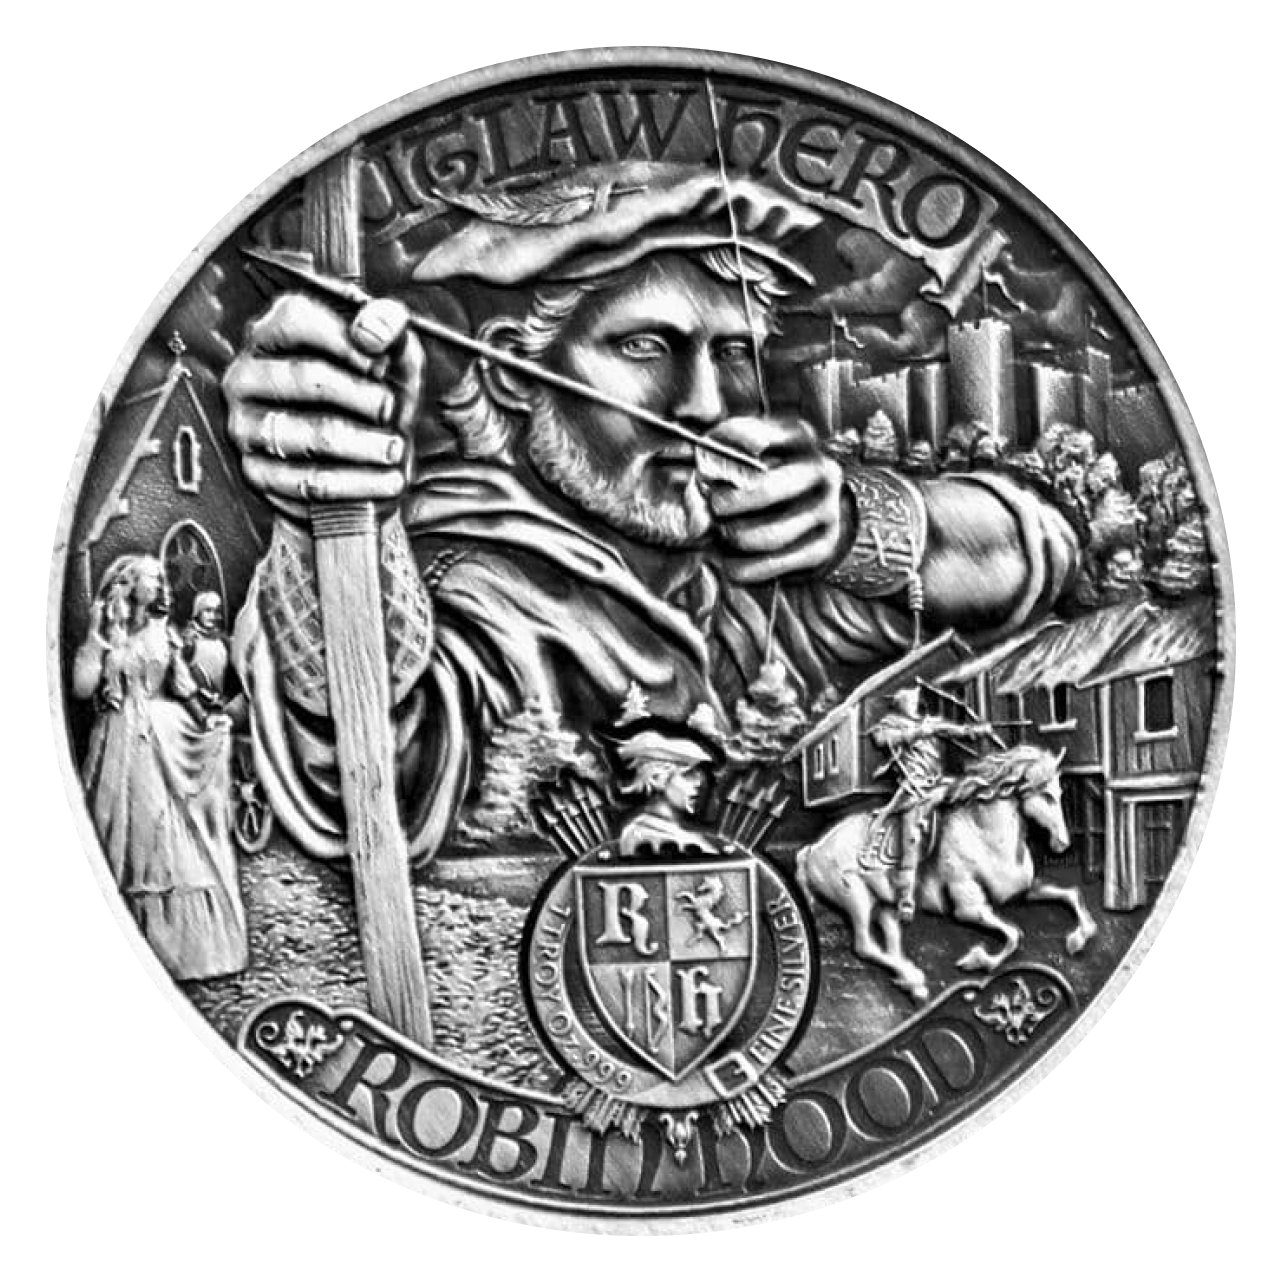 Robin Hood 1 oz Silver Coin - Niue $2